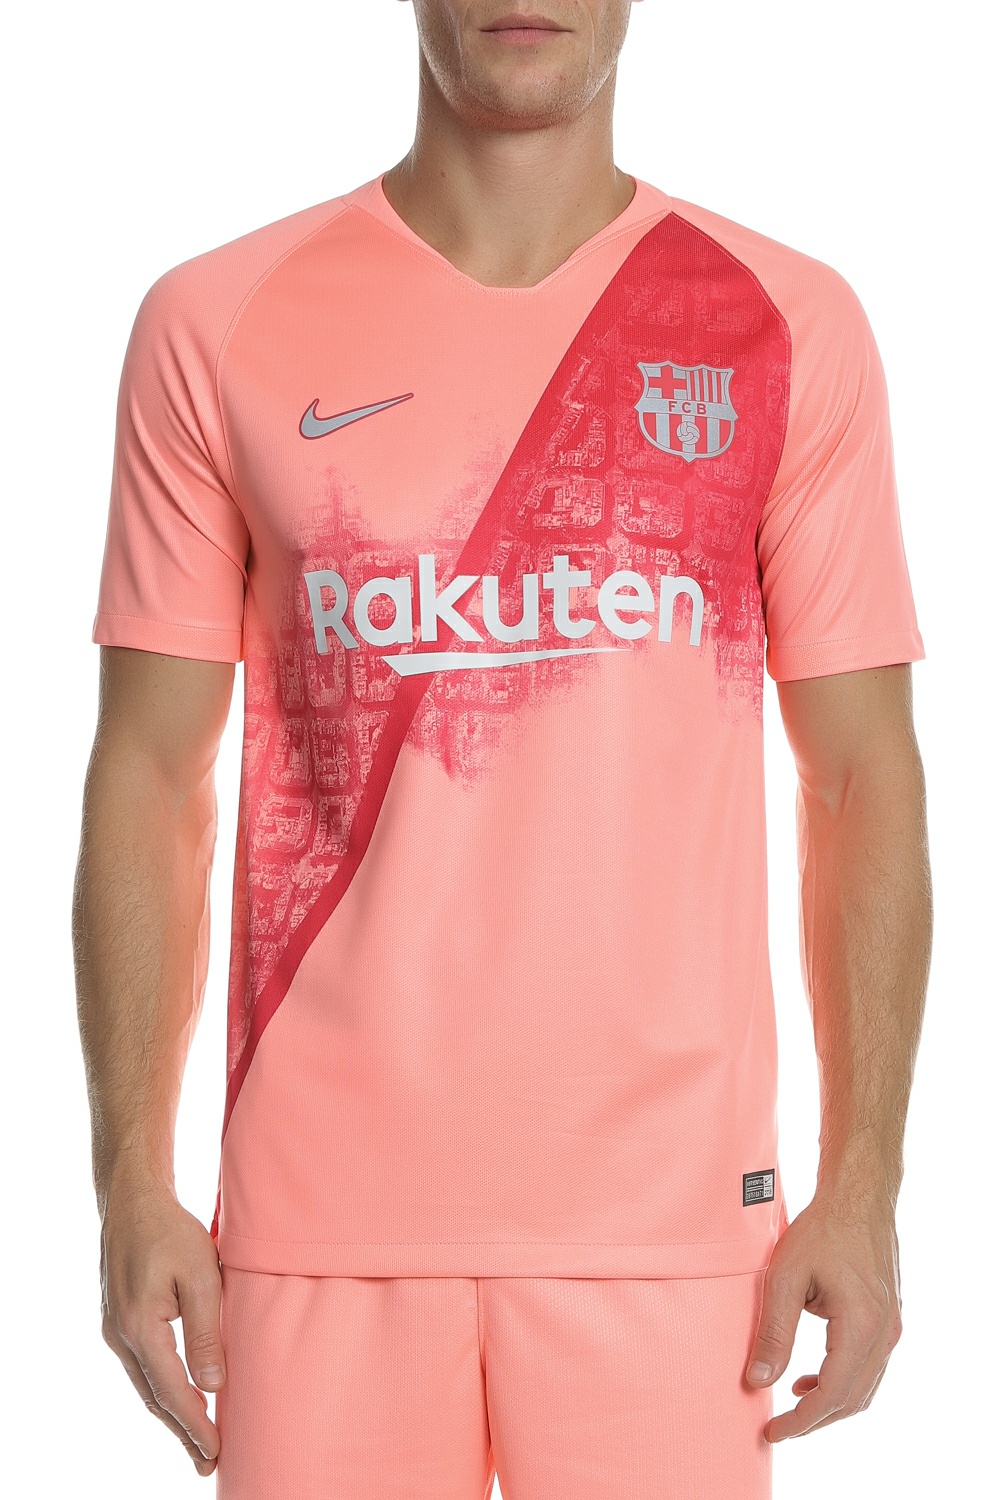 Ανδρικά/Ρούχα/Αθλητικά/T-shirt NIKE - Ανδρικό t-shirt FCB M NK BRT STAD NIKE ροζ